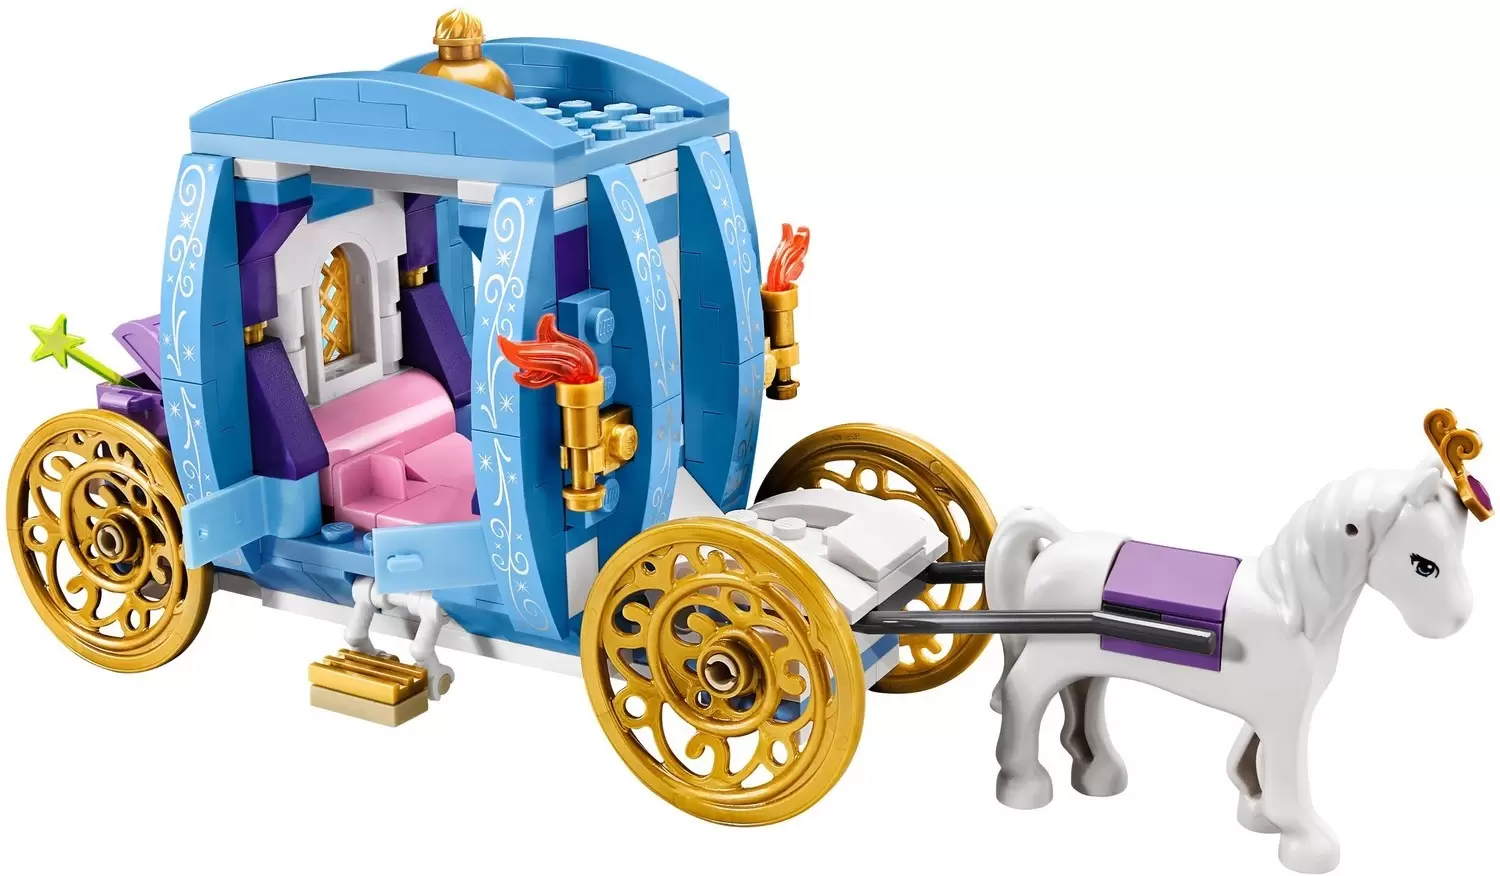 Dream Carriage - LEGO Disney set 41053